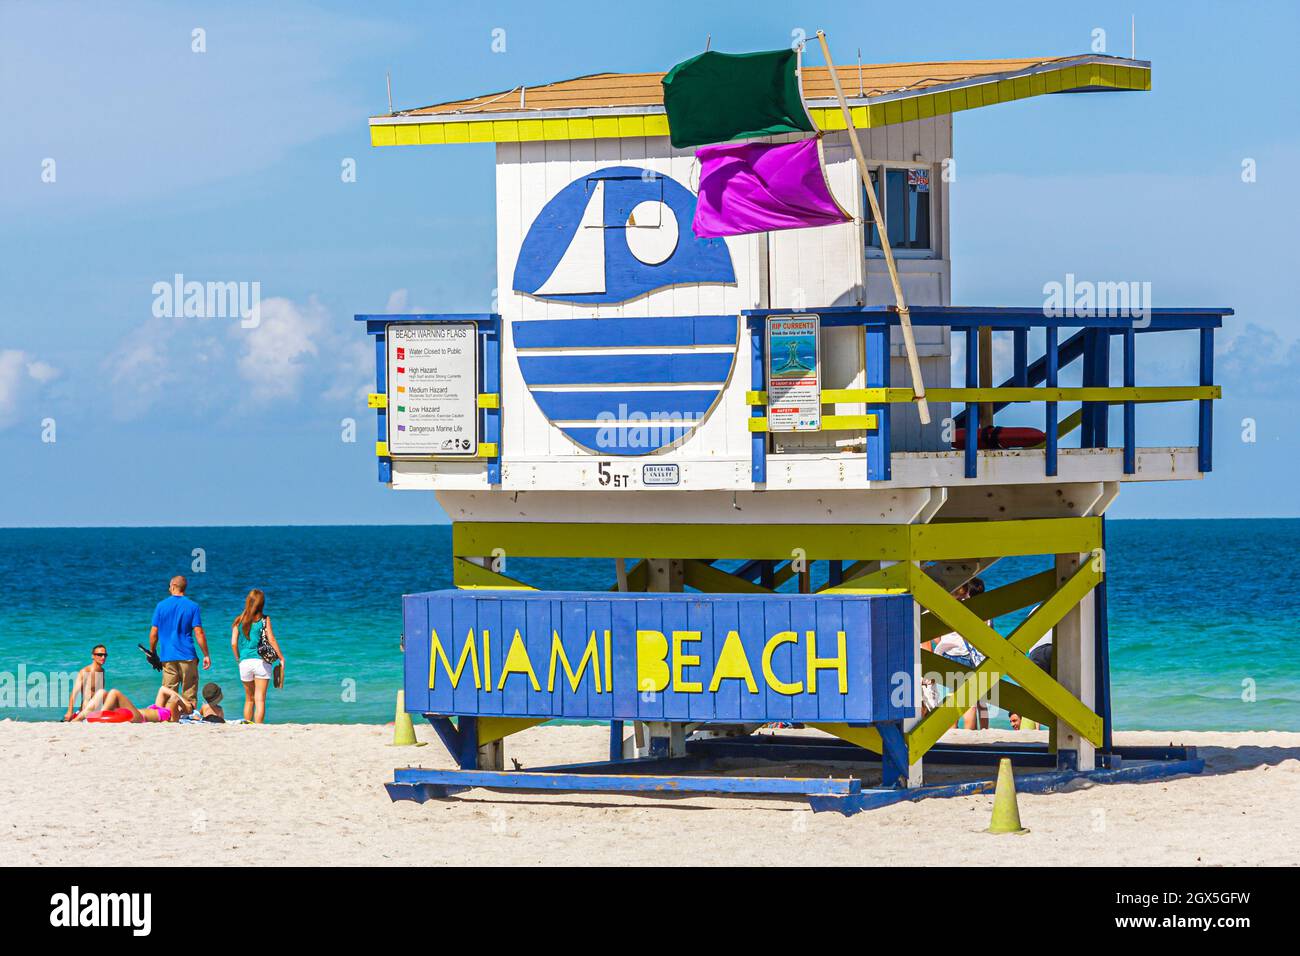 Miami Beach Florida, Atlantic Ocean eau public plage station de maître nageur, drapeau d'avertissement flags violet vert dangereux vie marine Banque D'Images